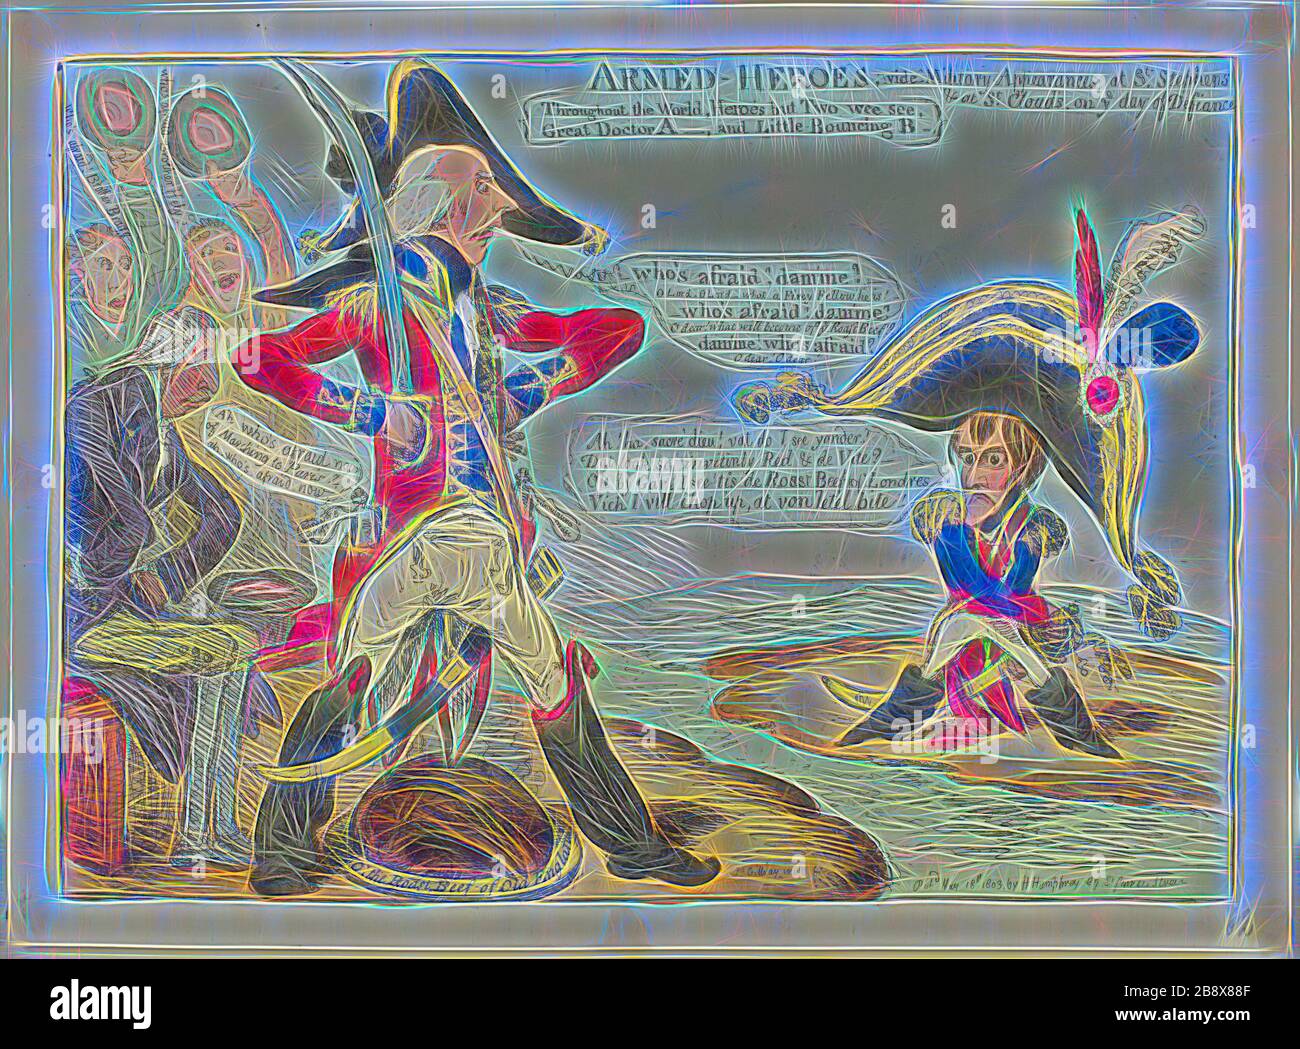 Armed Heroes, gest., (gest.: "Bewaffnete Helden", gest. "gest.", "James Gillray" (Britisch, 1756-1815), herausgegeben von Hannah Humphrey (Englisch, ca. 1745-185), England, Radierung, mit Handfärbung, auf Papier, von Gibon neu vorgestellt, Design von warmfröhlichem Leuchten von Helligkeit und Lichtstrahlen. Klassische Kunst mit moderner Note neu erfunden. Fotografie, inspiriert vom Futurismus, die dynamische Energie moderner Technologie, Bewegung, Geschwindigkeit und Kultur revolutionieren. Stockfoto